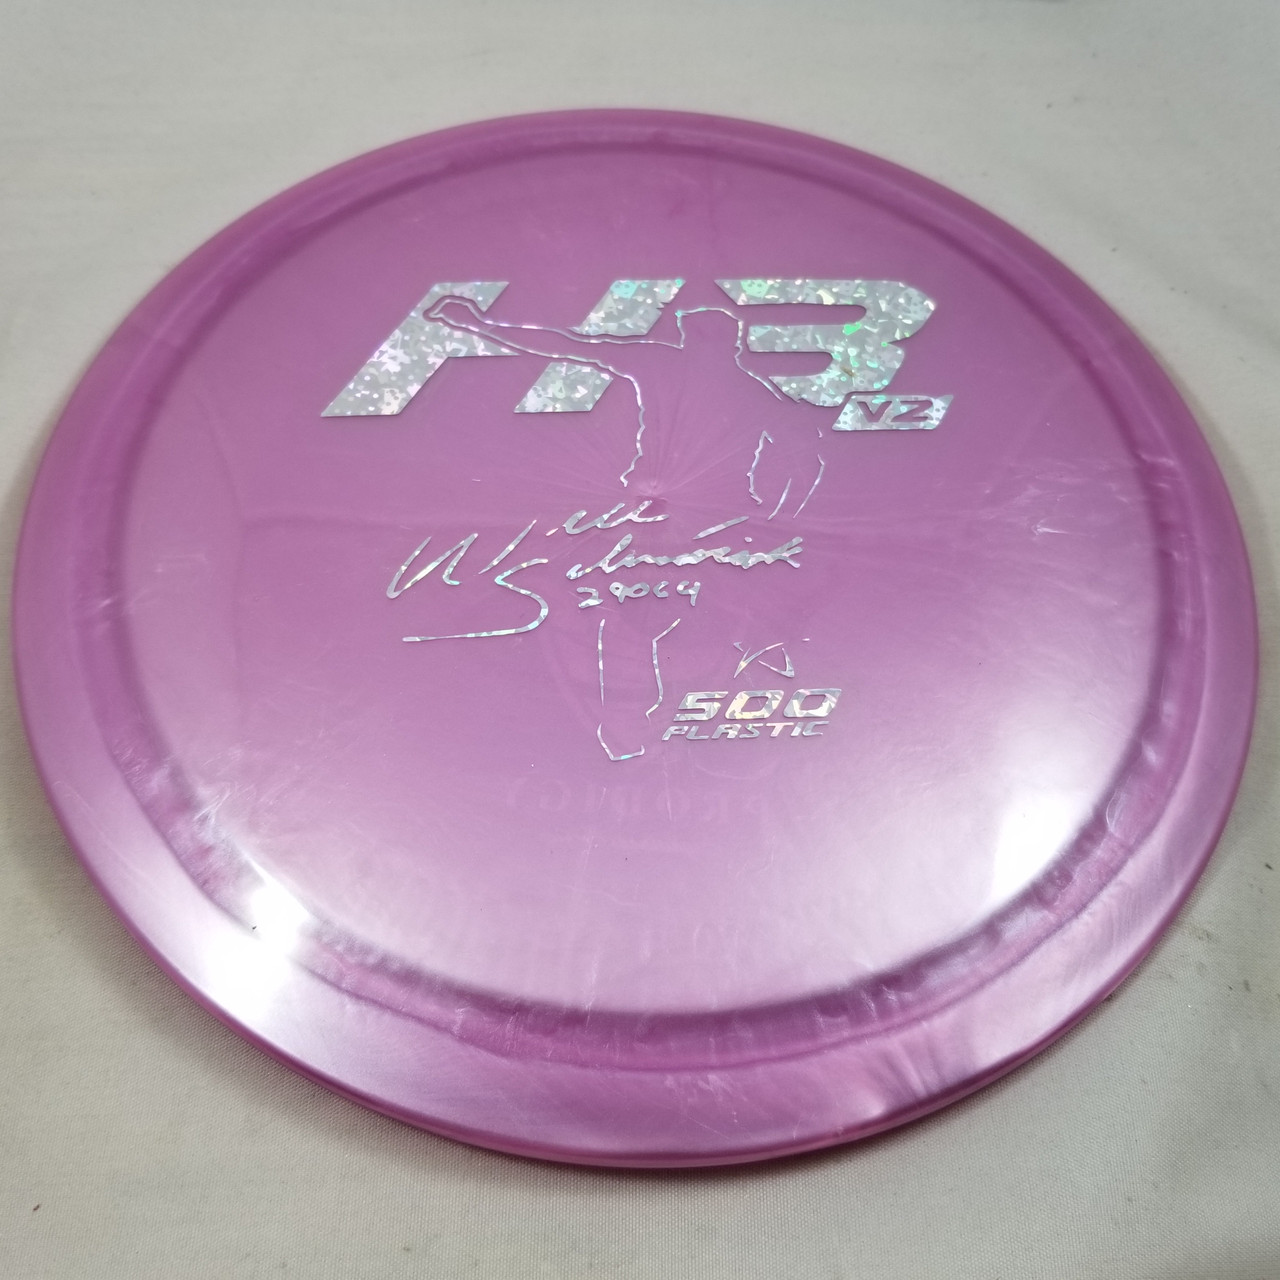 Prodigy H3v2 500 Will Schusterick Purple-Silver 176g